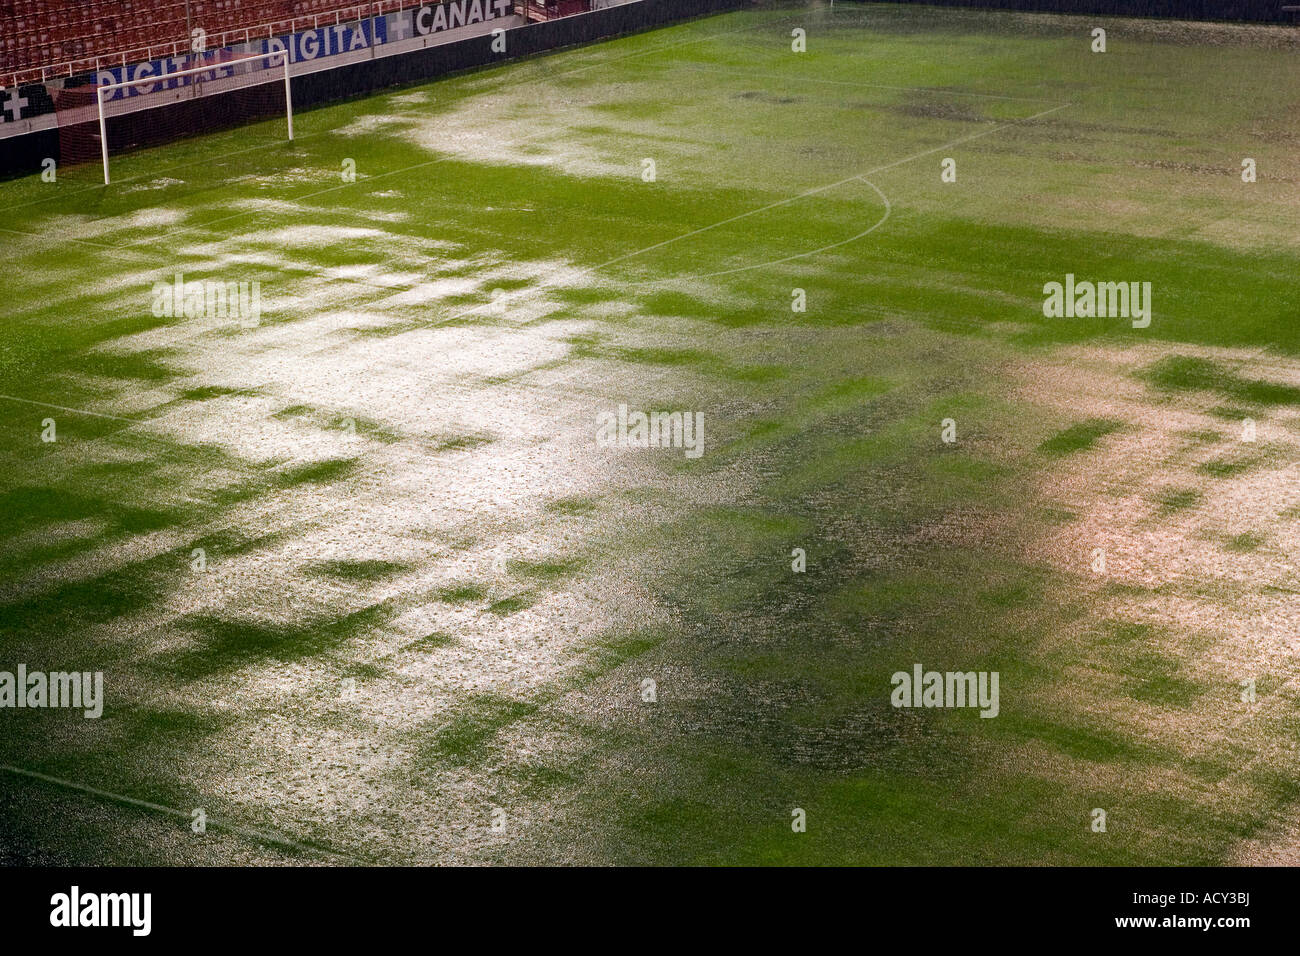 Le stade Sanchez Pizjuan sous une pluie diluvienne, Séville, Espagne Banque D'Images